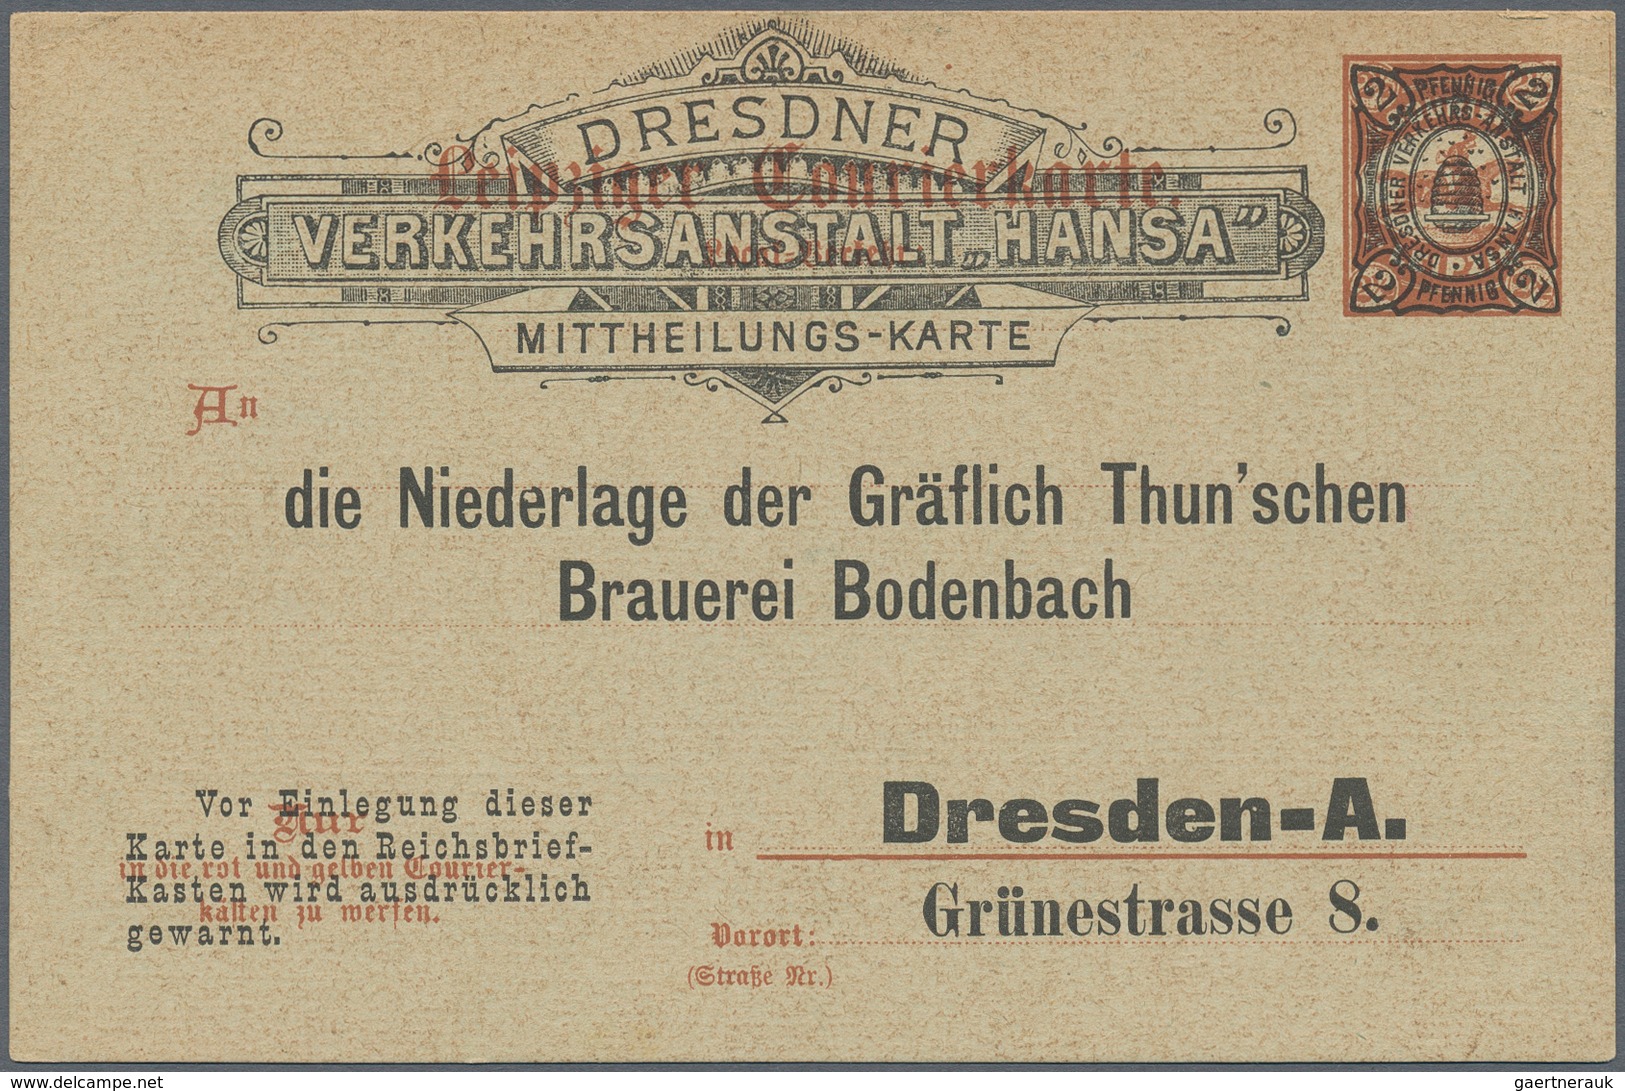 Deutsches Reich - Privatpost (Stadtpost): DRESDEN: Hansa und Gemeinnütziger Verein, umfangreiche Sam